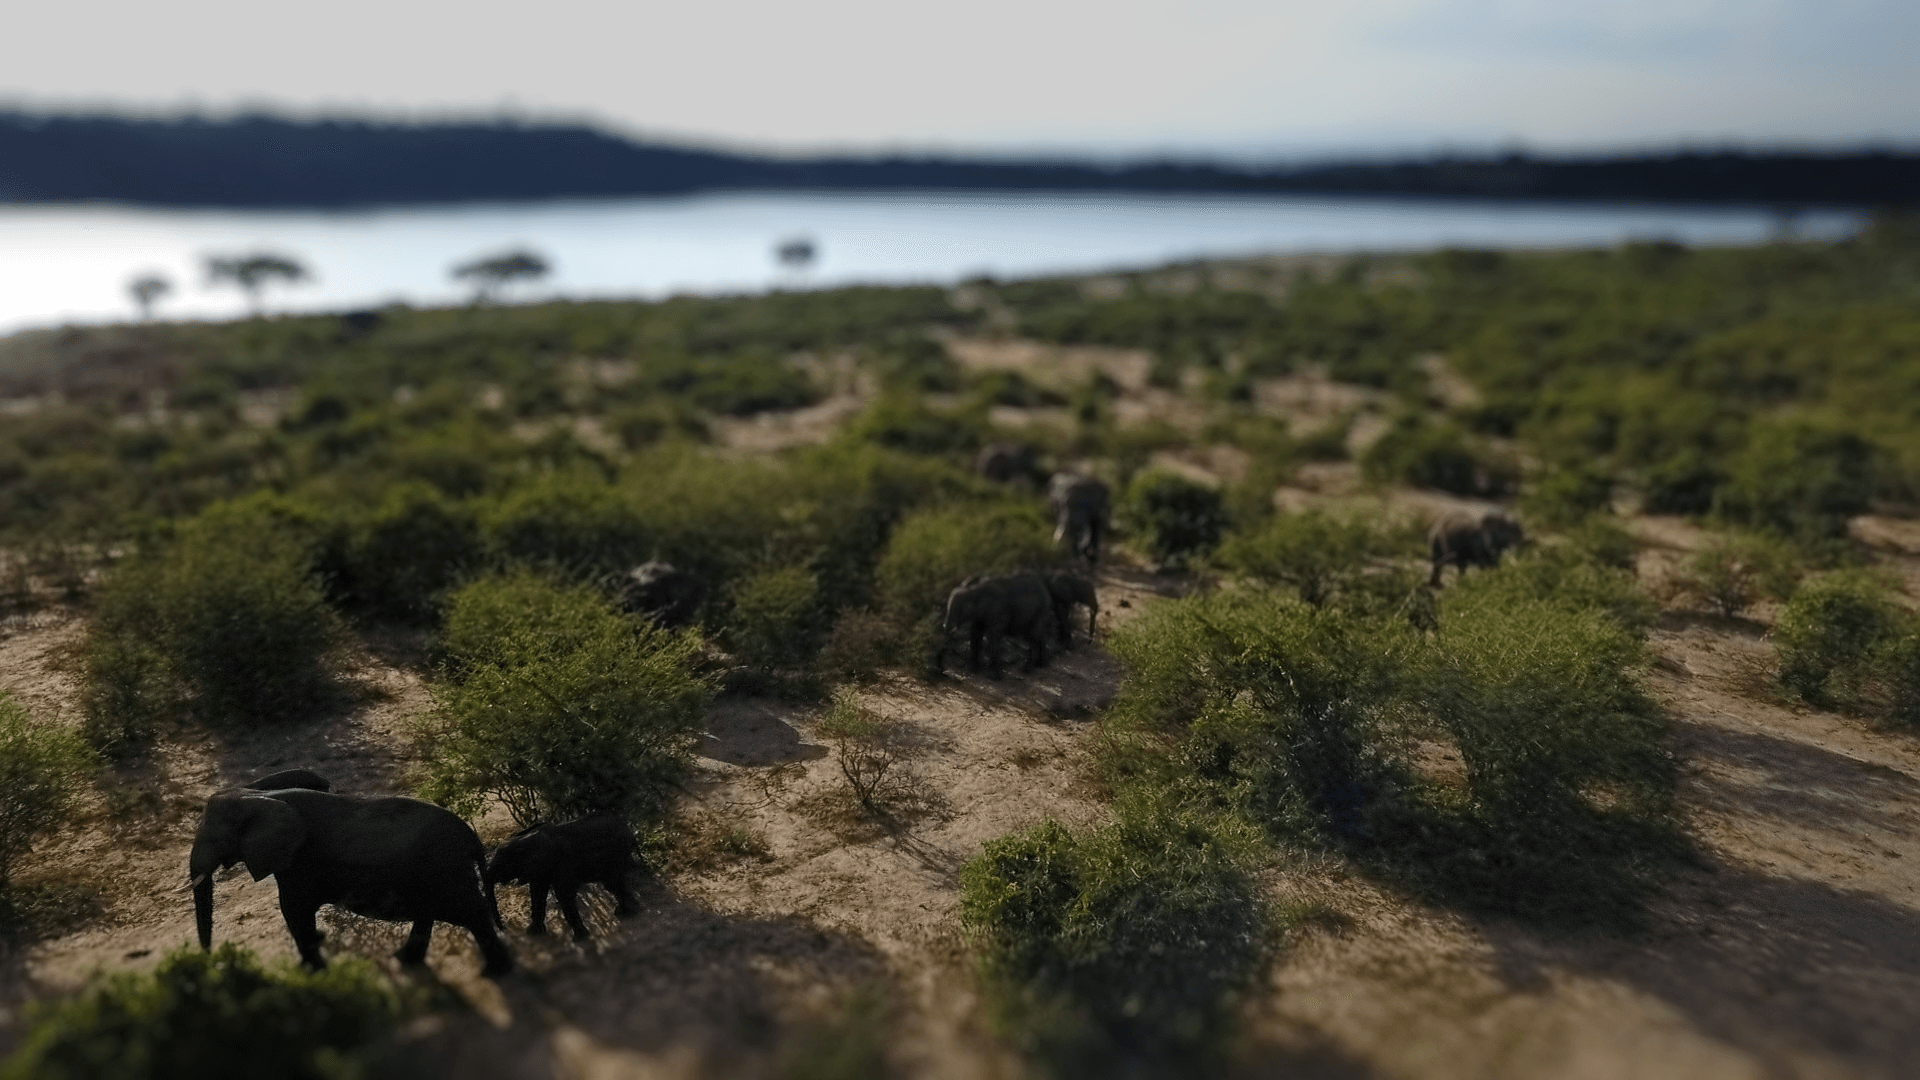 Walking Elephants, Uganda